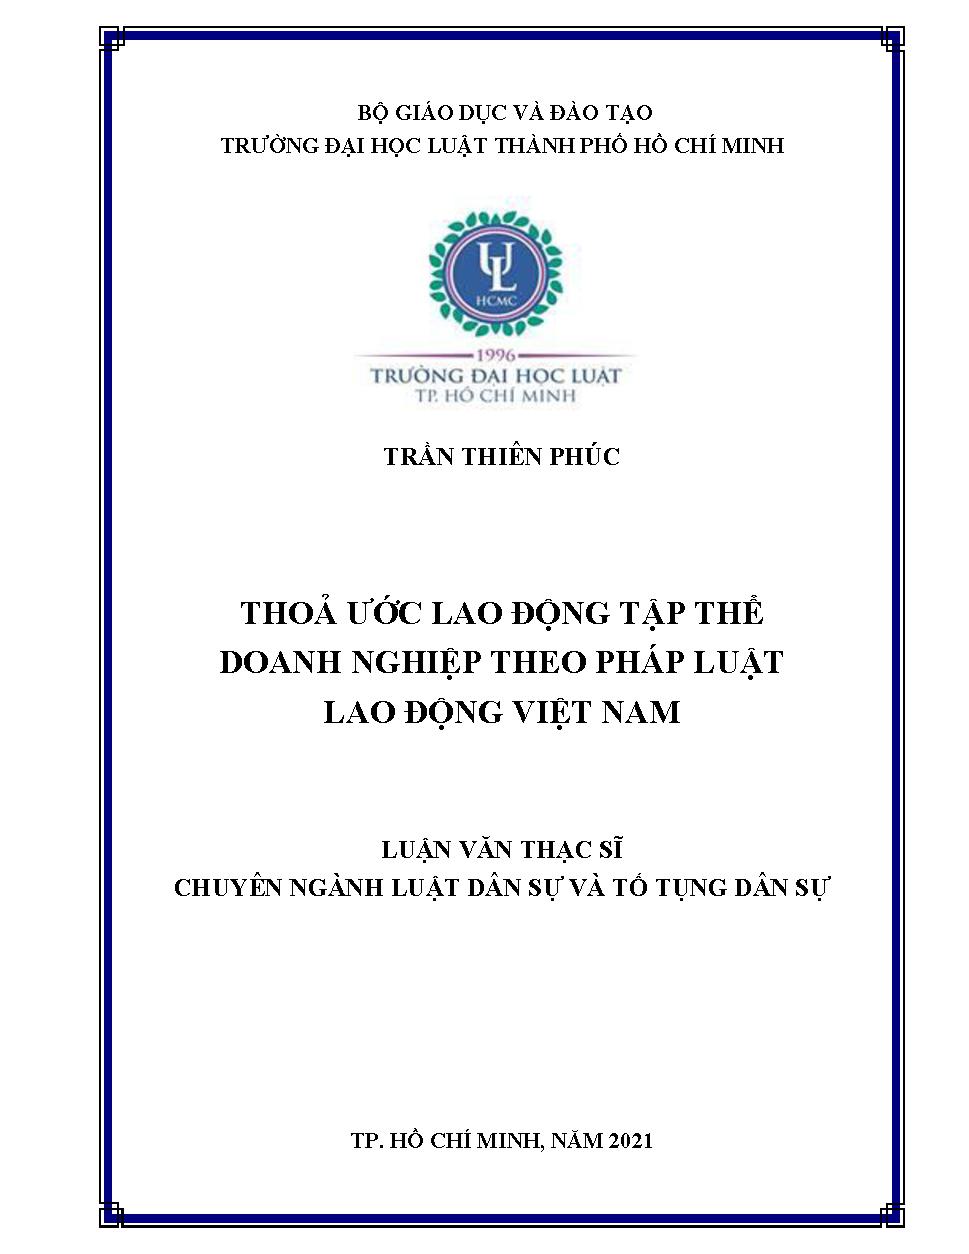 Thỏa ước lao động tập thể doanh nghiệp theo pháp luật lao động Việt Nam